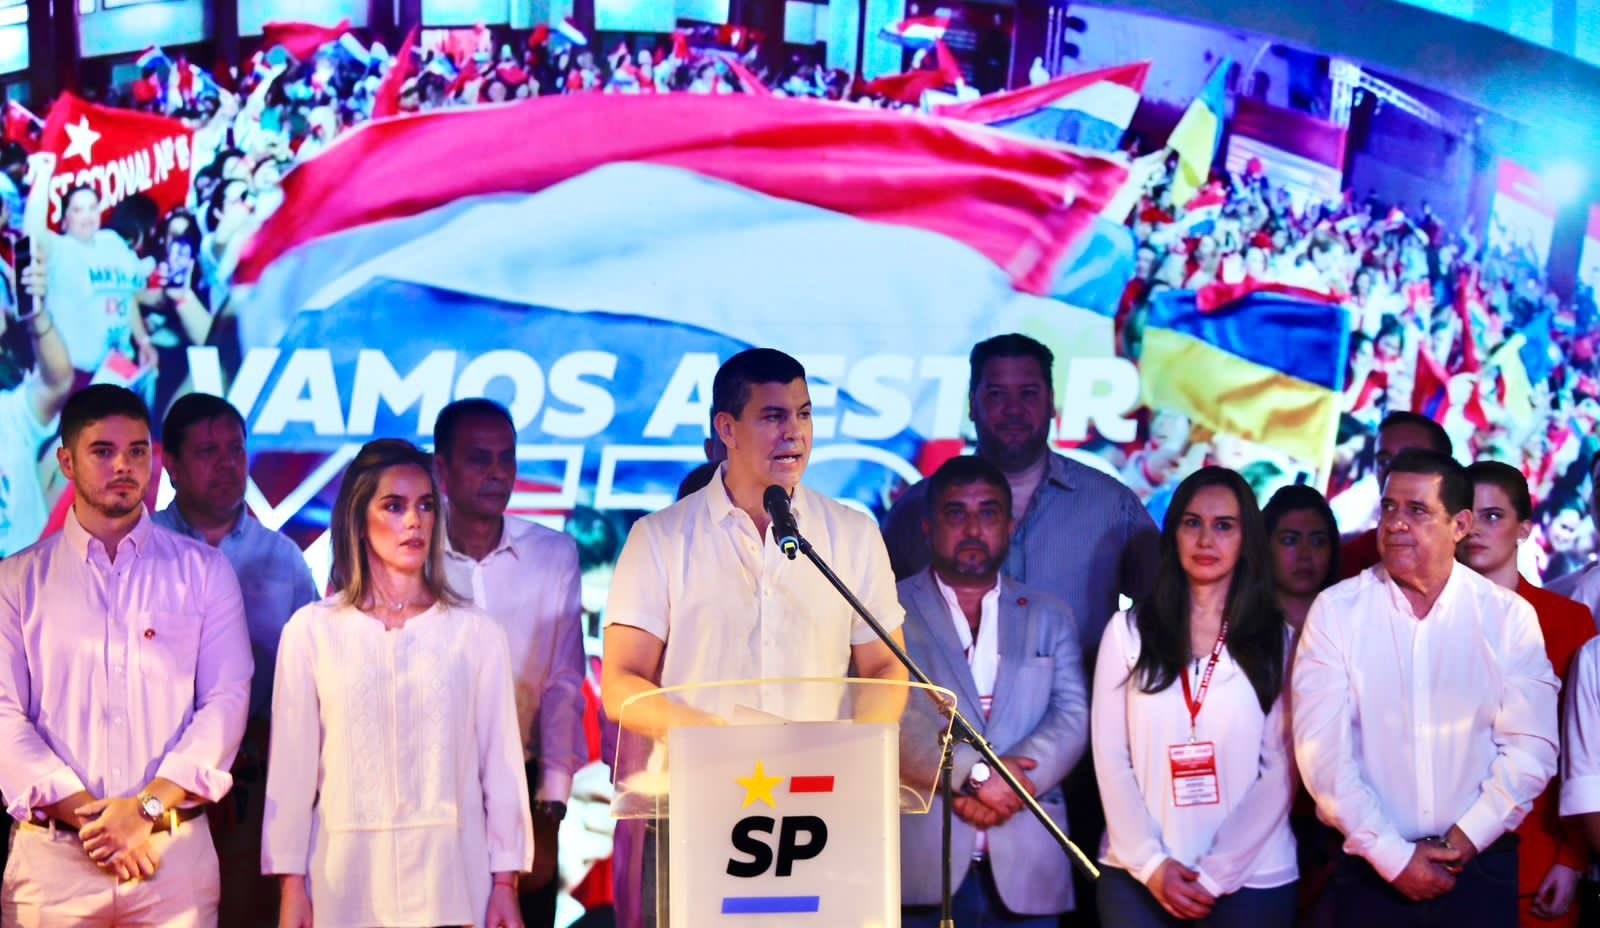 Santiago Peña presidente electo Paraguay